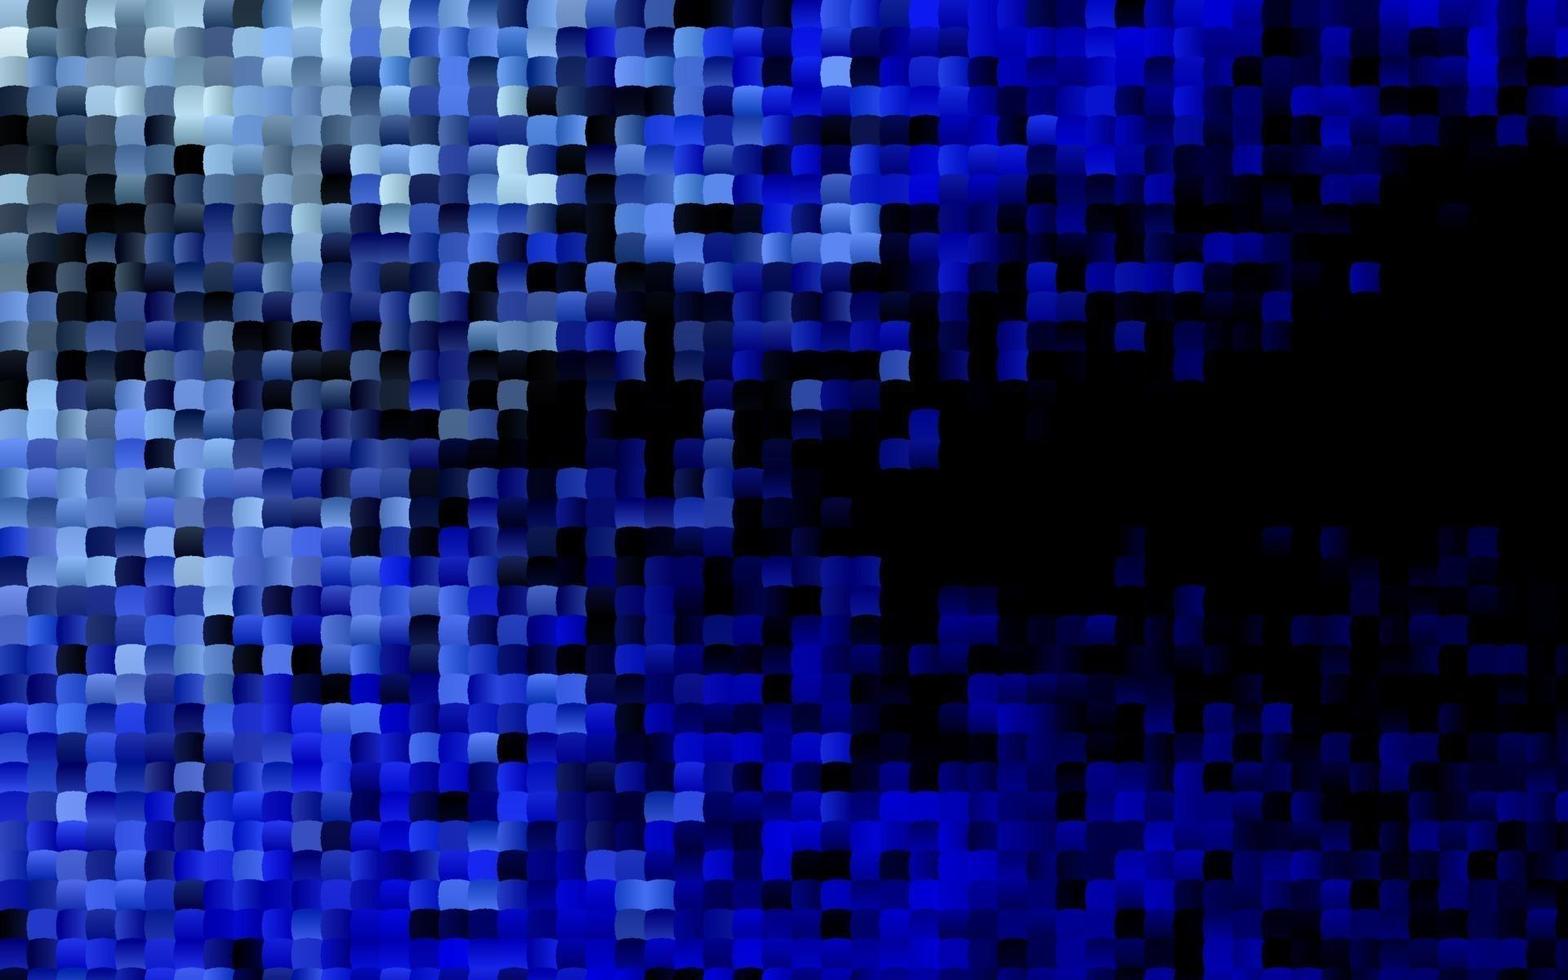 modelo de vetor azul escuro com cristais, retângulos.